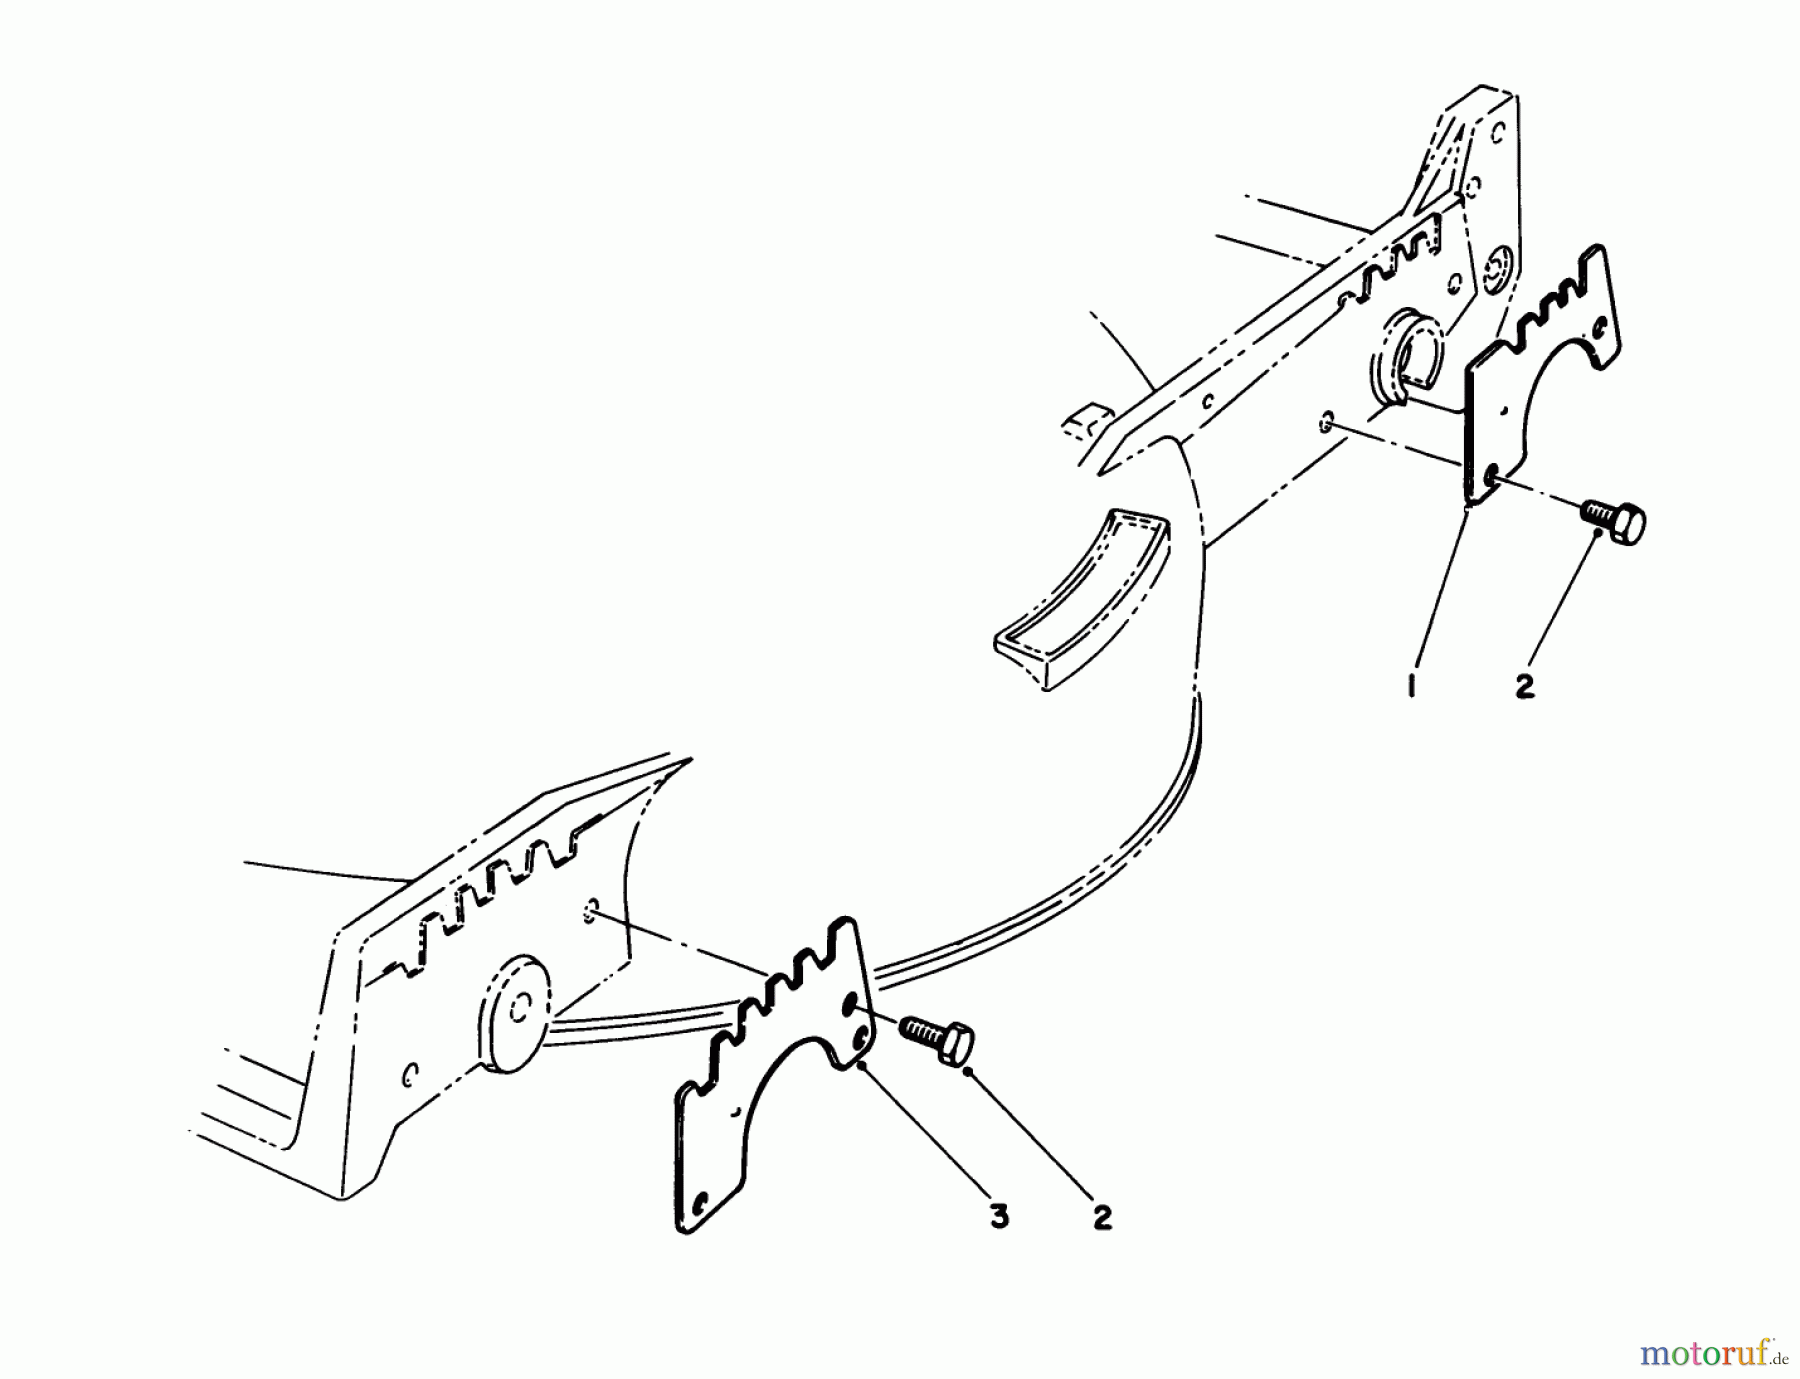  Toro Neu Mowers, Walk-Behind Seite 1 20626C - Toro Lawnmower, 1986 (6000001-6999999) WEAR PLATE KIT NO. 49-4080 (OPTIONAL)